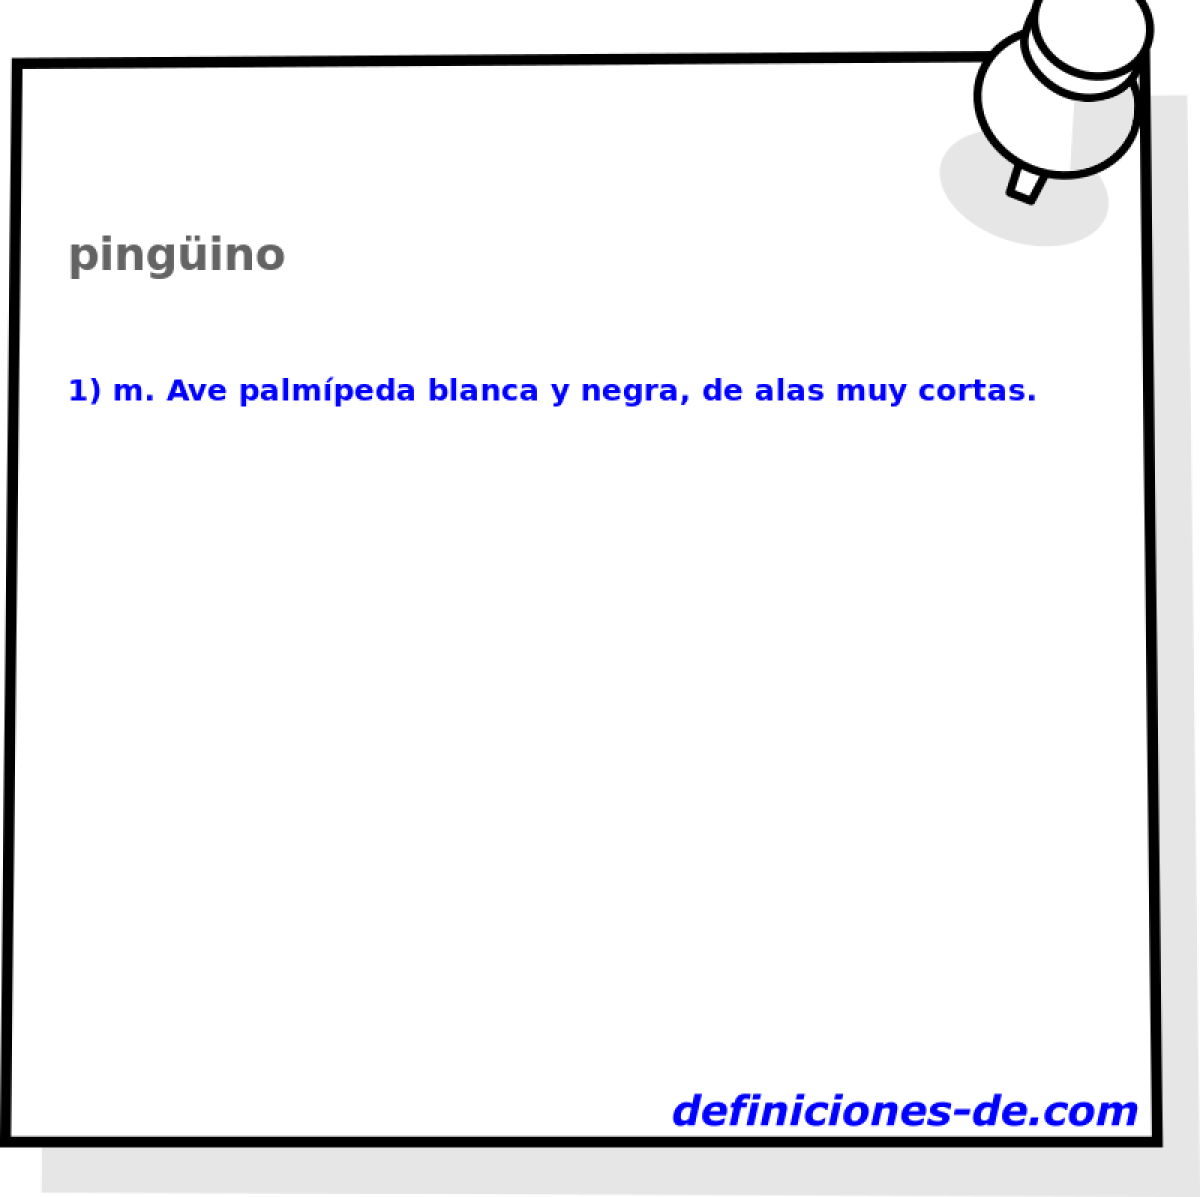 pingino 